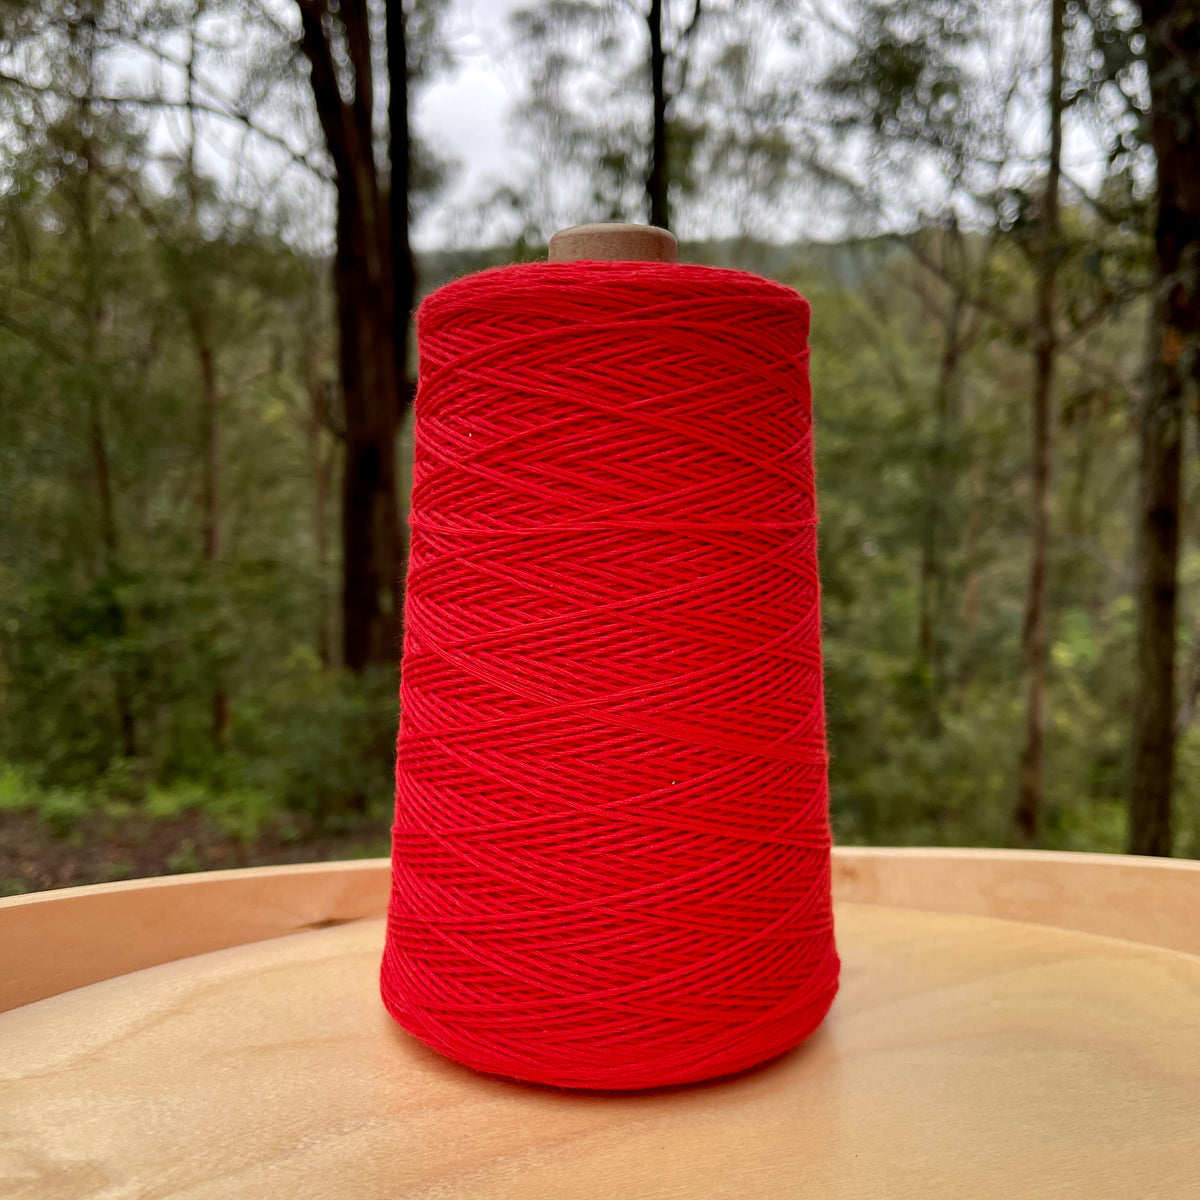 Australian cotton crochet yarn by Ada Fibres in Red